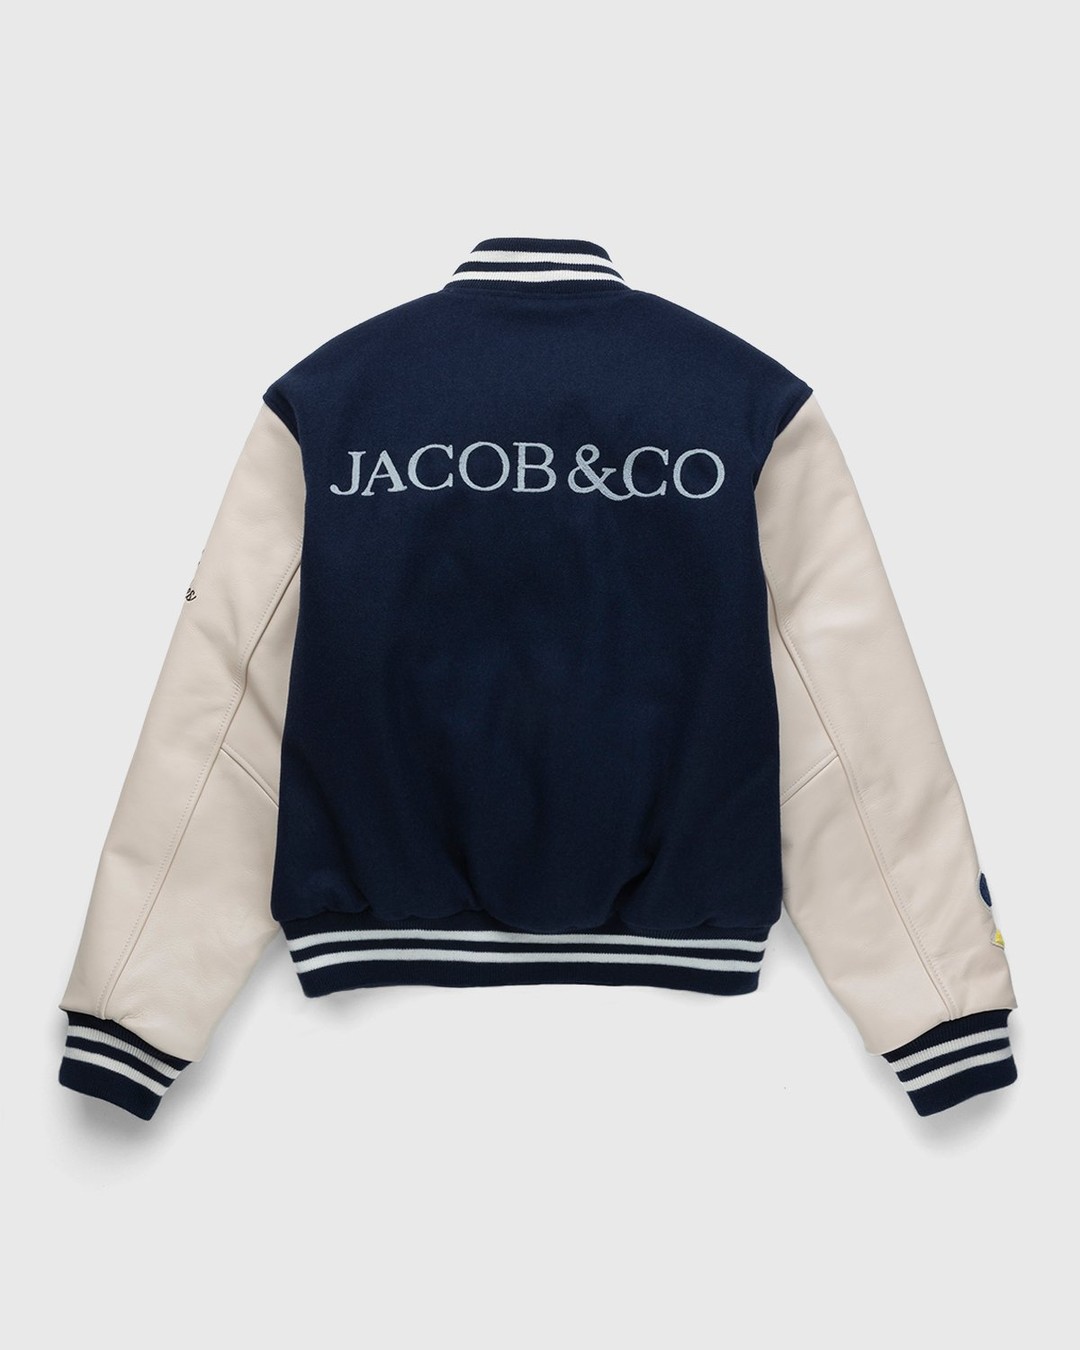 Jacob & Co. x Highsnobiety – Logo Varsity Jacket Navy Creme - Outerwear - Blue - Image 2